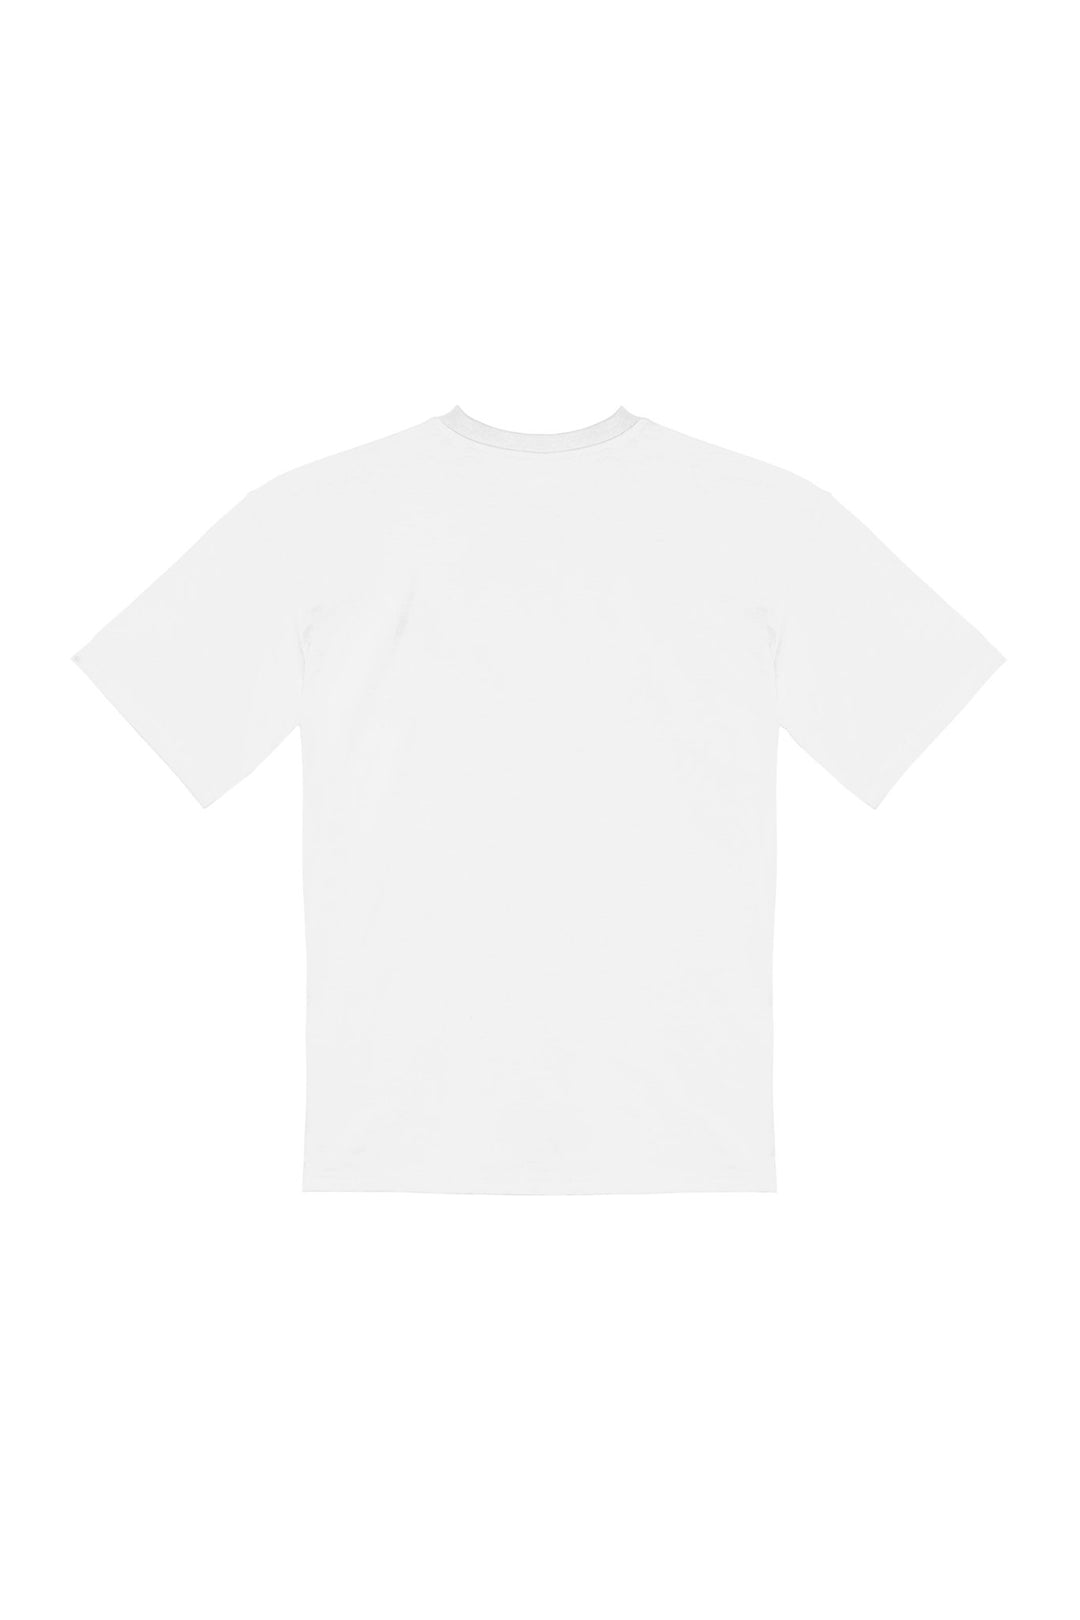 PARIS EST MAGIQUE・T-shirt unisexe・Blanc - Le Cartel